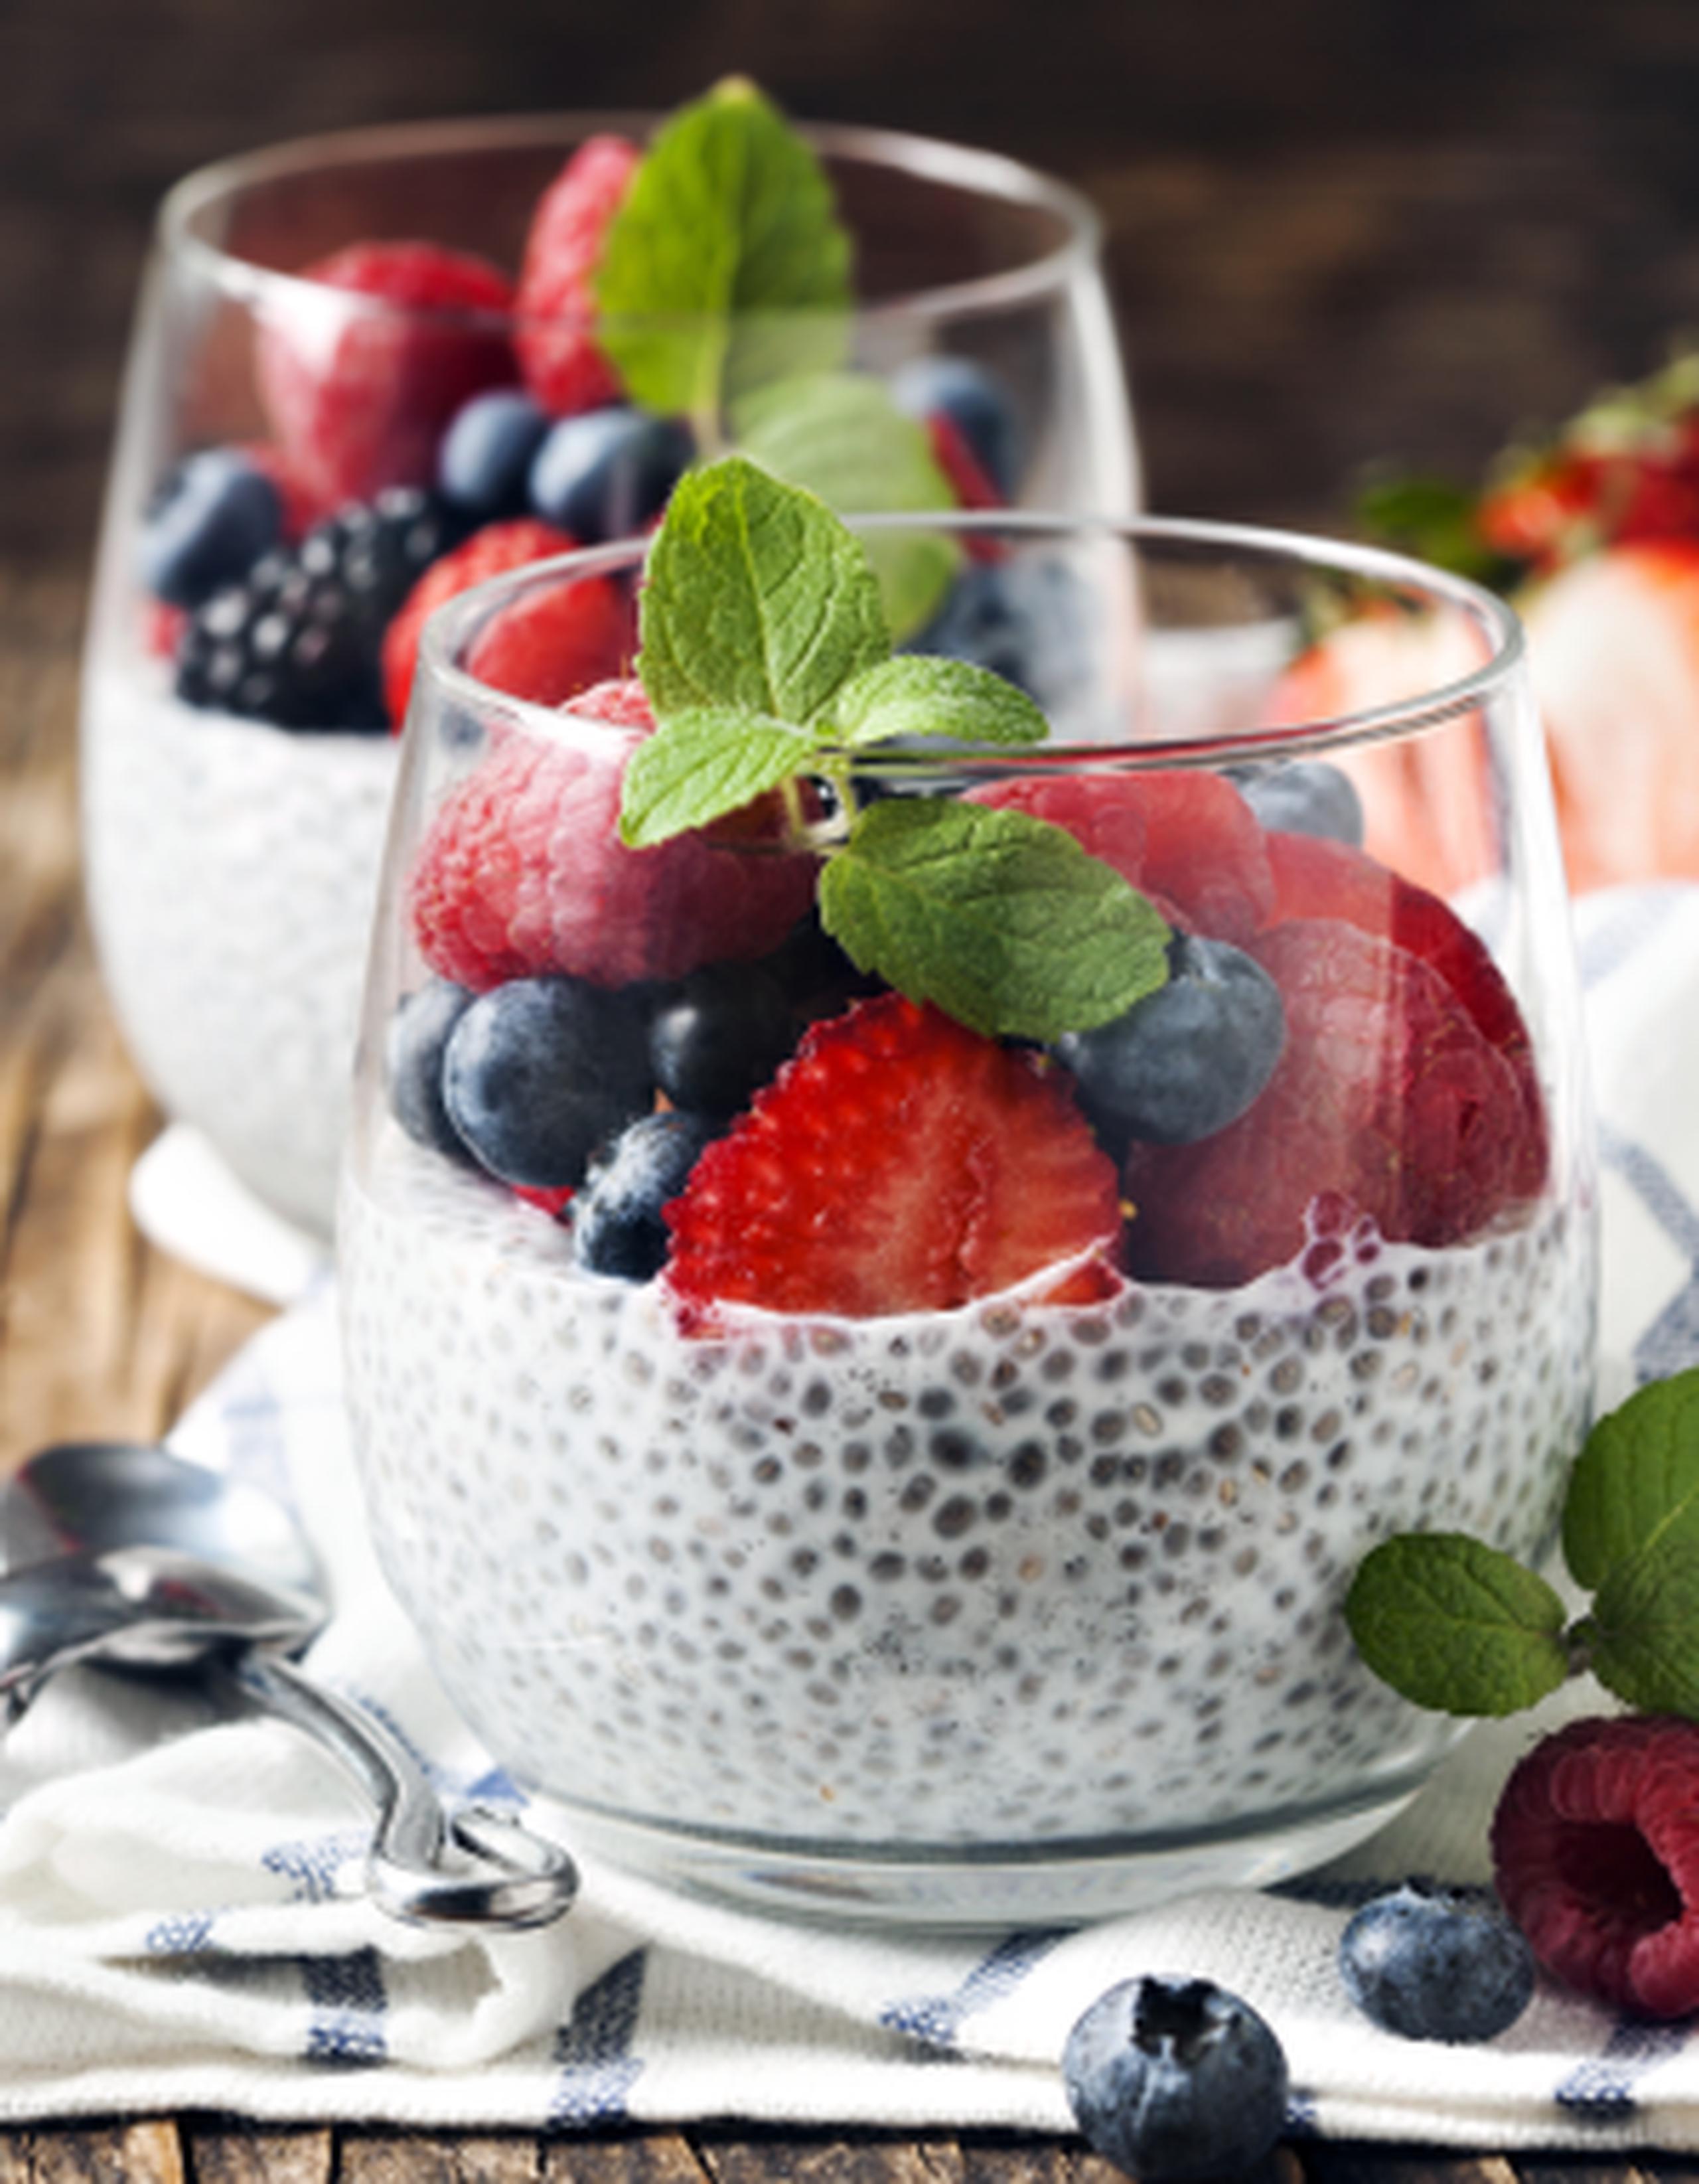 Yogur con semillas de chía y frutas. (Shutterstock)